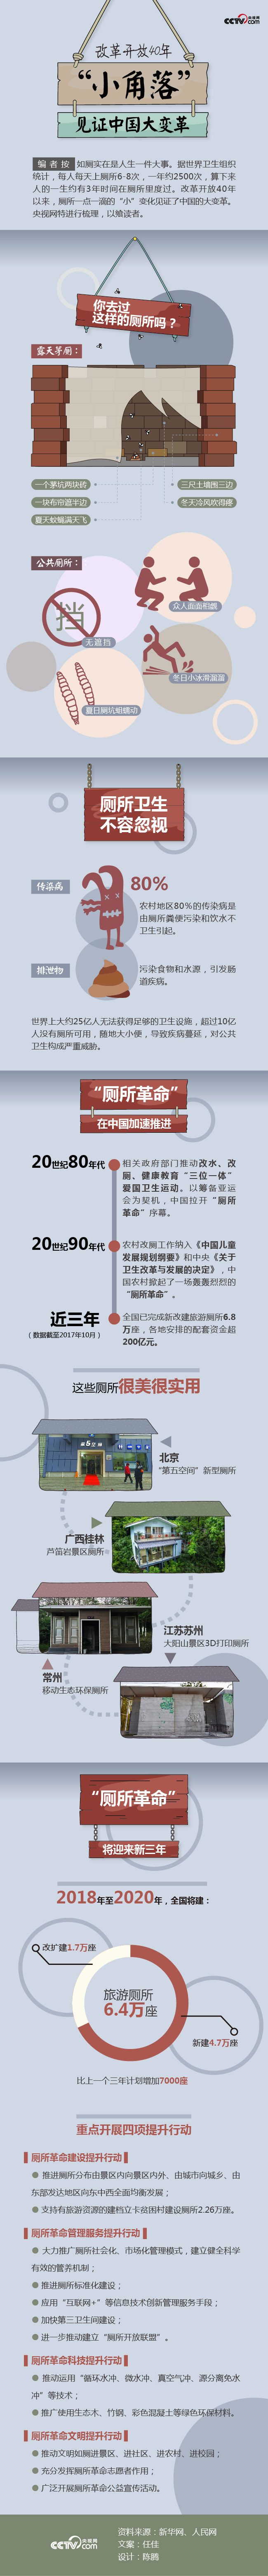 改革开放40年——“小角落”见证中国大变革